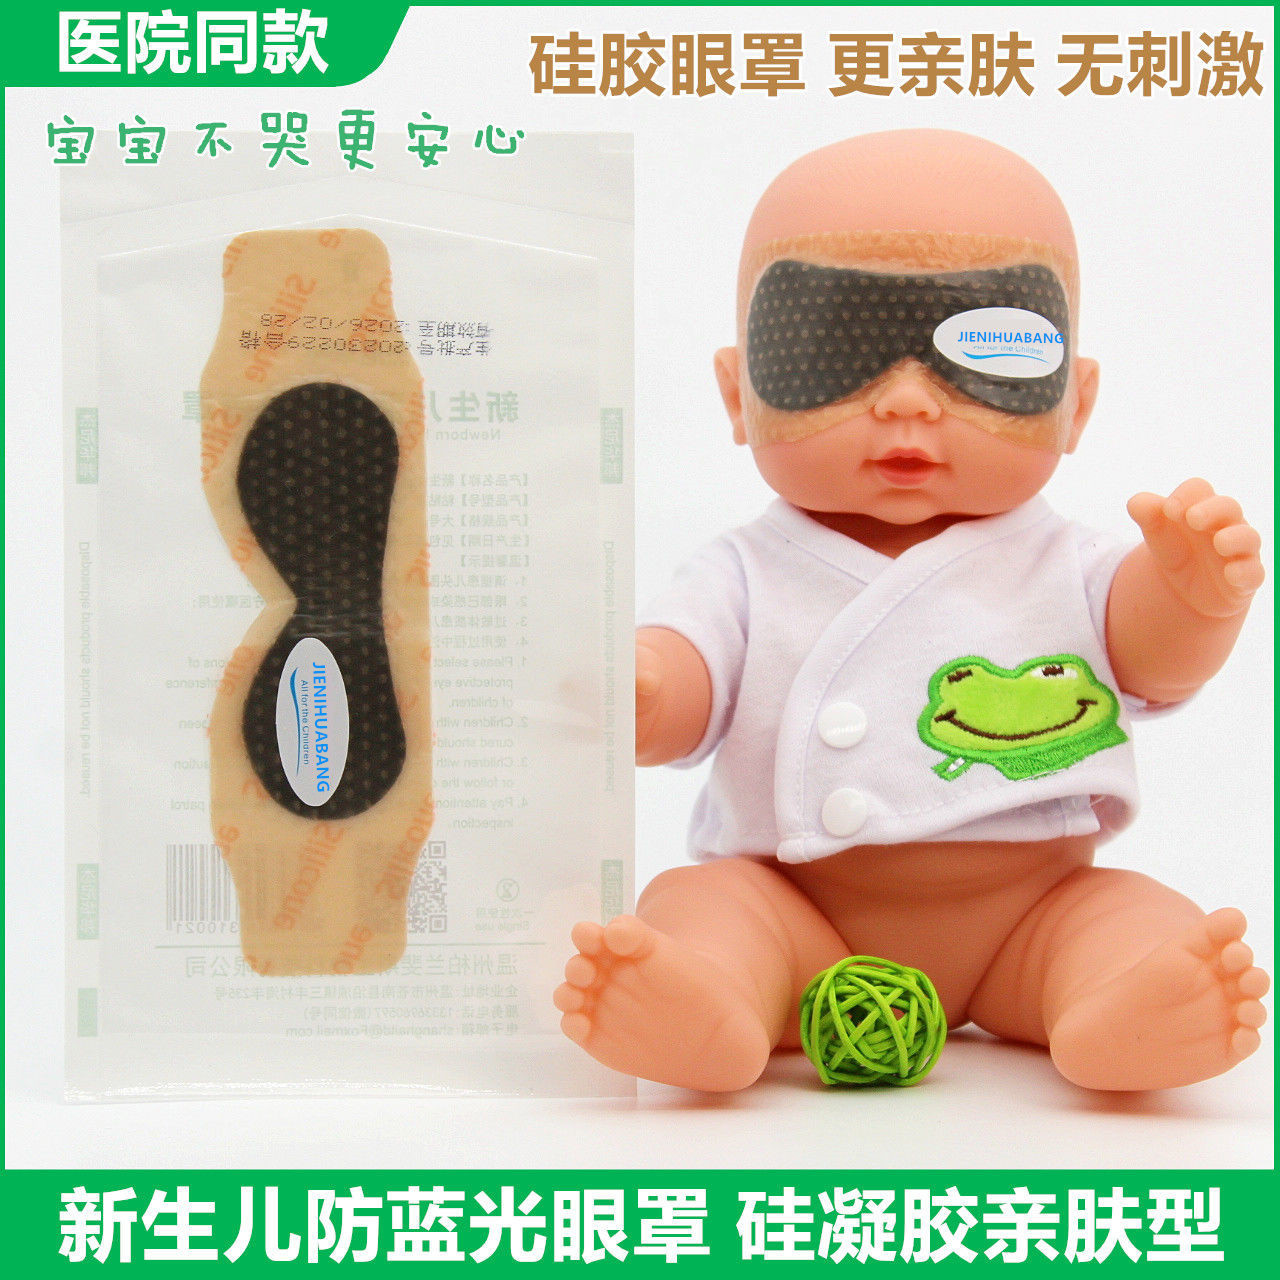 新生儿防蓝光眼罩凝胶眼罩硅胶眼罩婴儿光疗防护眼罩遮光宝宝黄疸